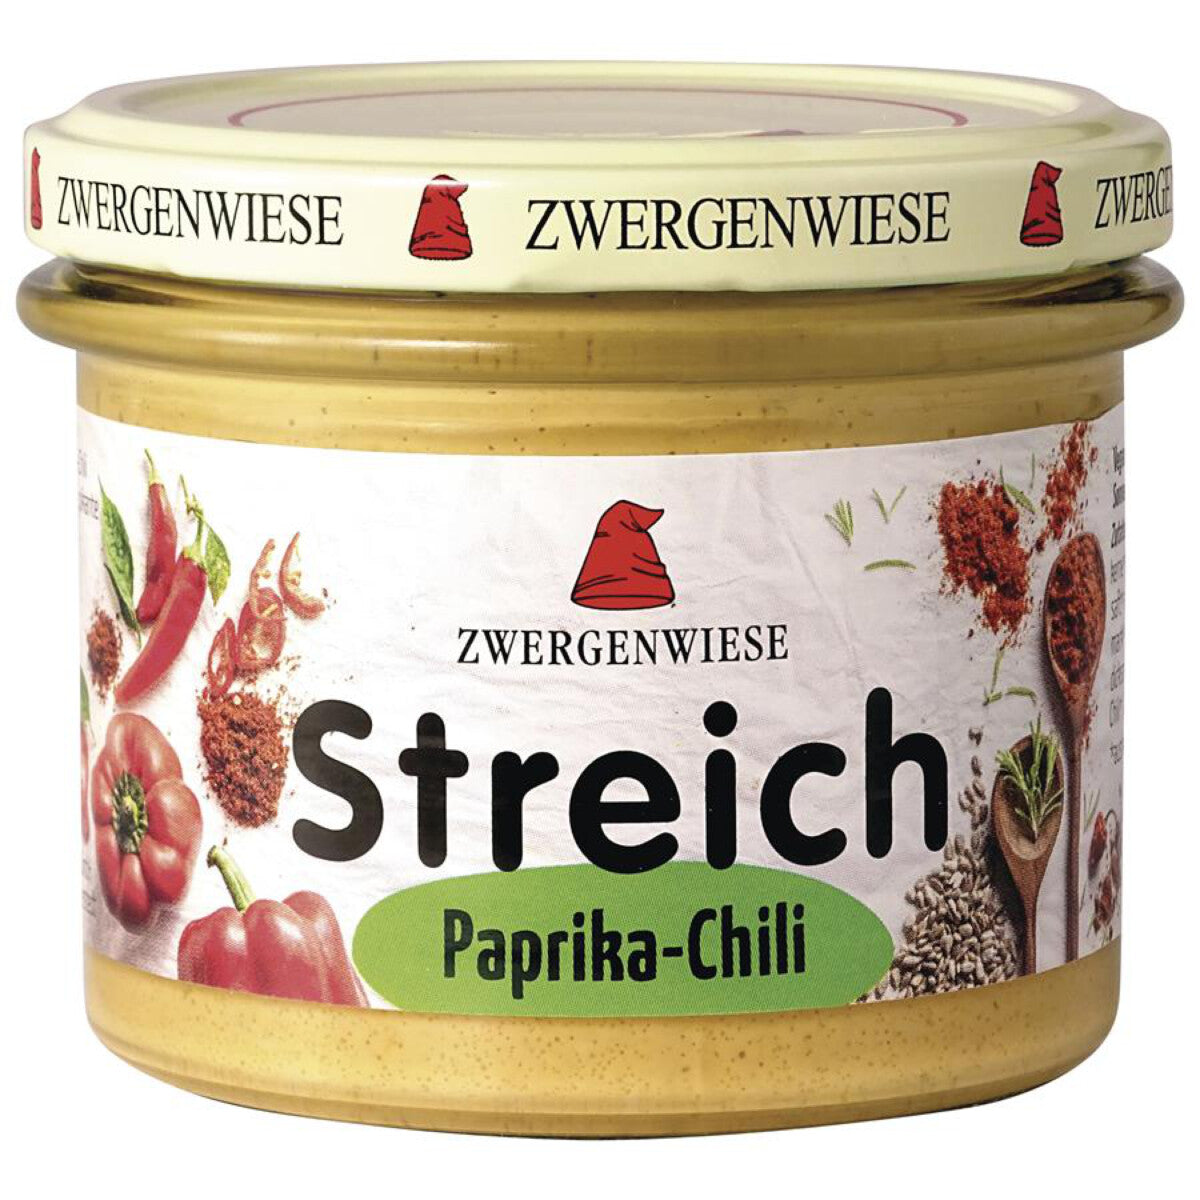 ZWERGENWIESE Paprika-Chili Streich - 180 g